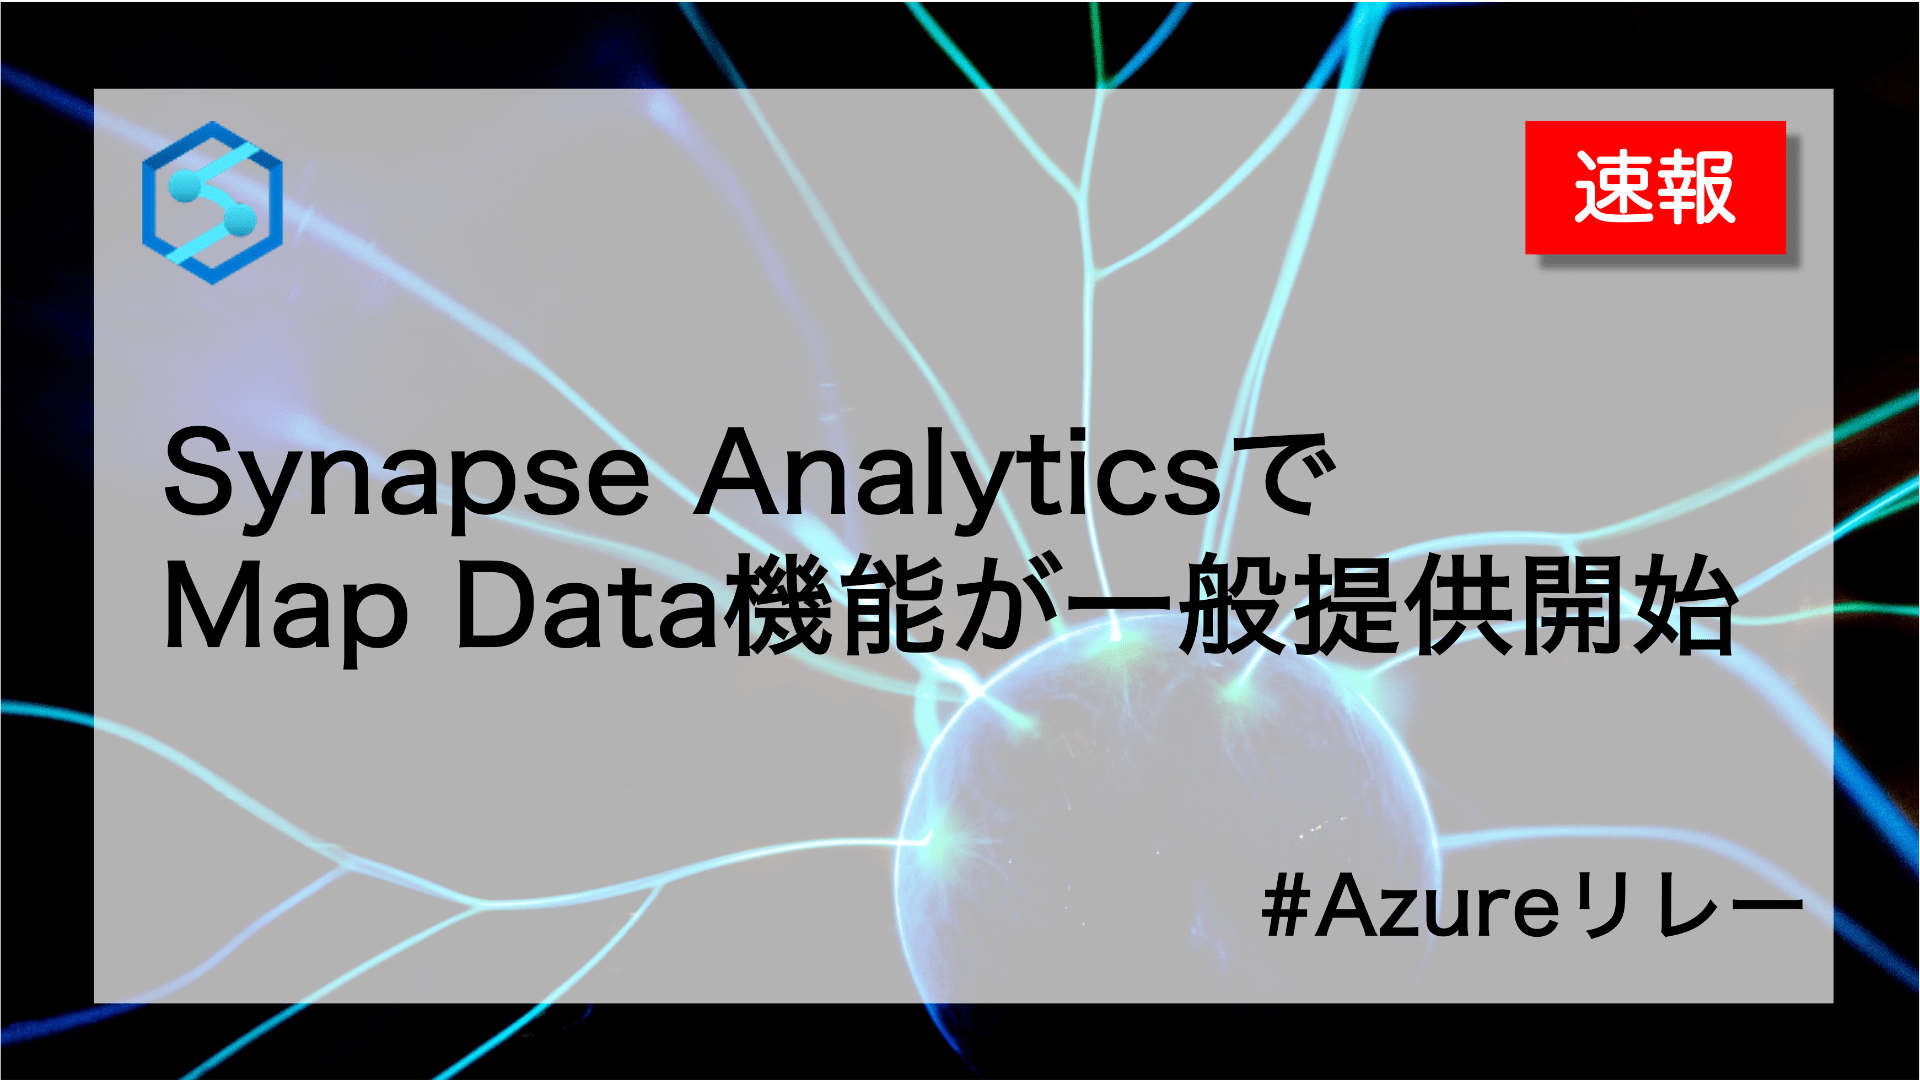 速報です。Synapse AnalyticsでMap Data機能が一般提供開始されました #Azureリレー